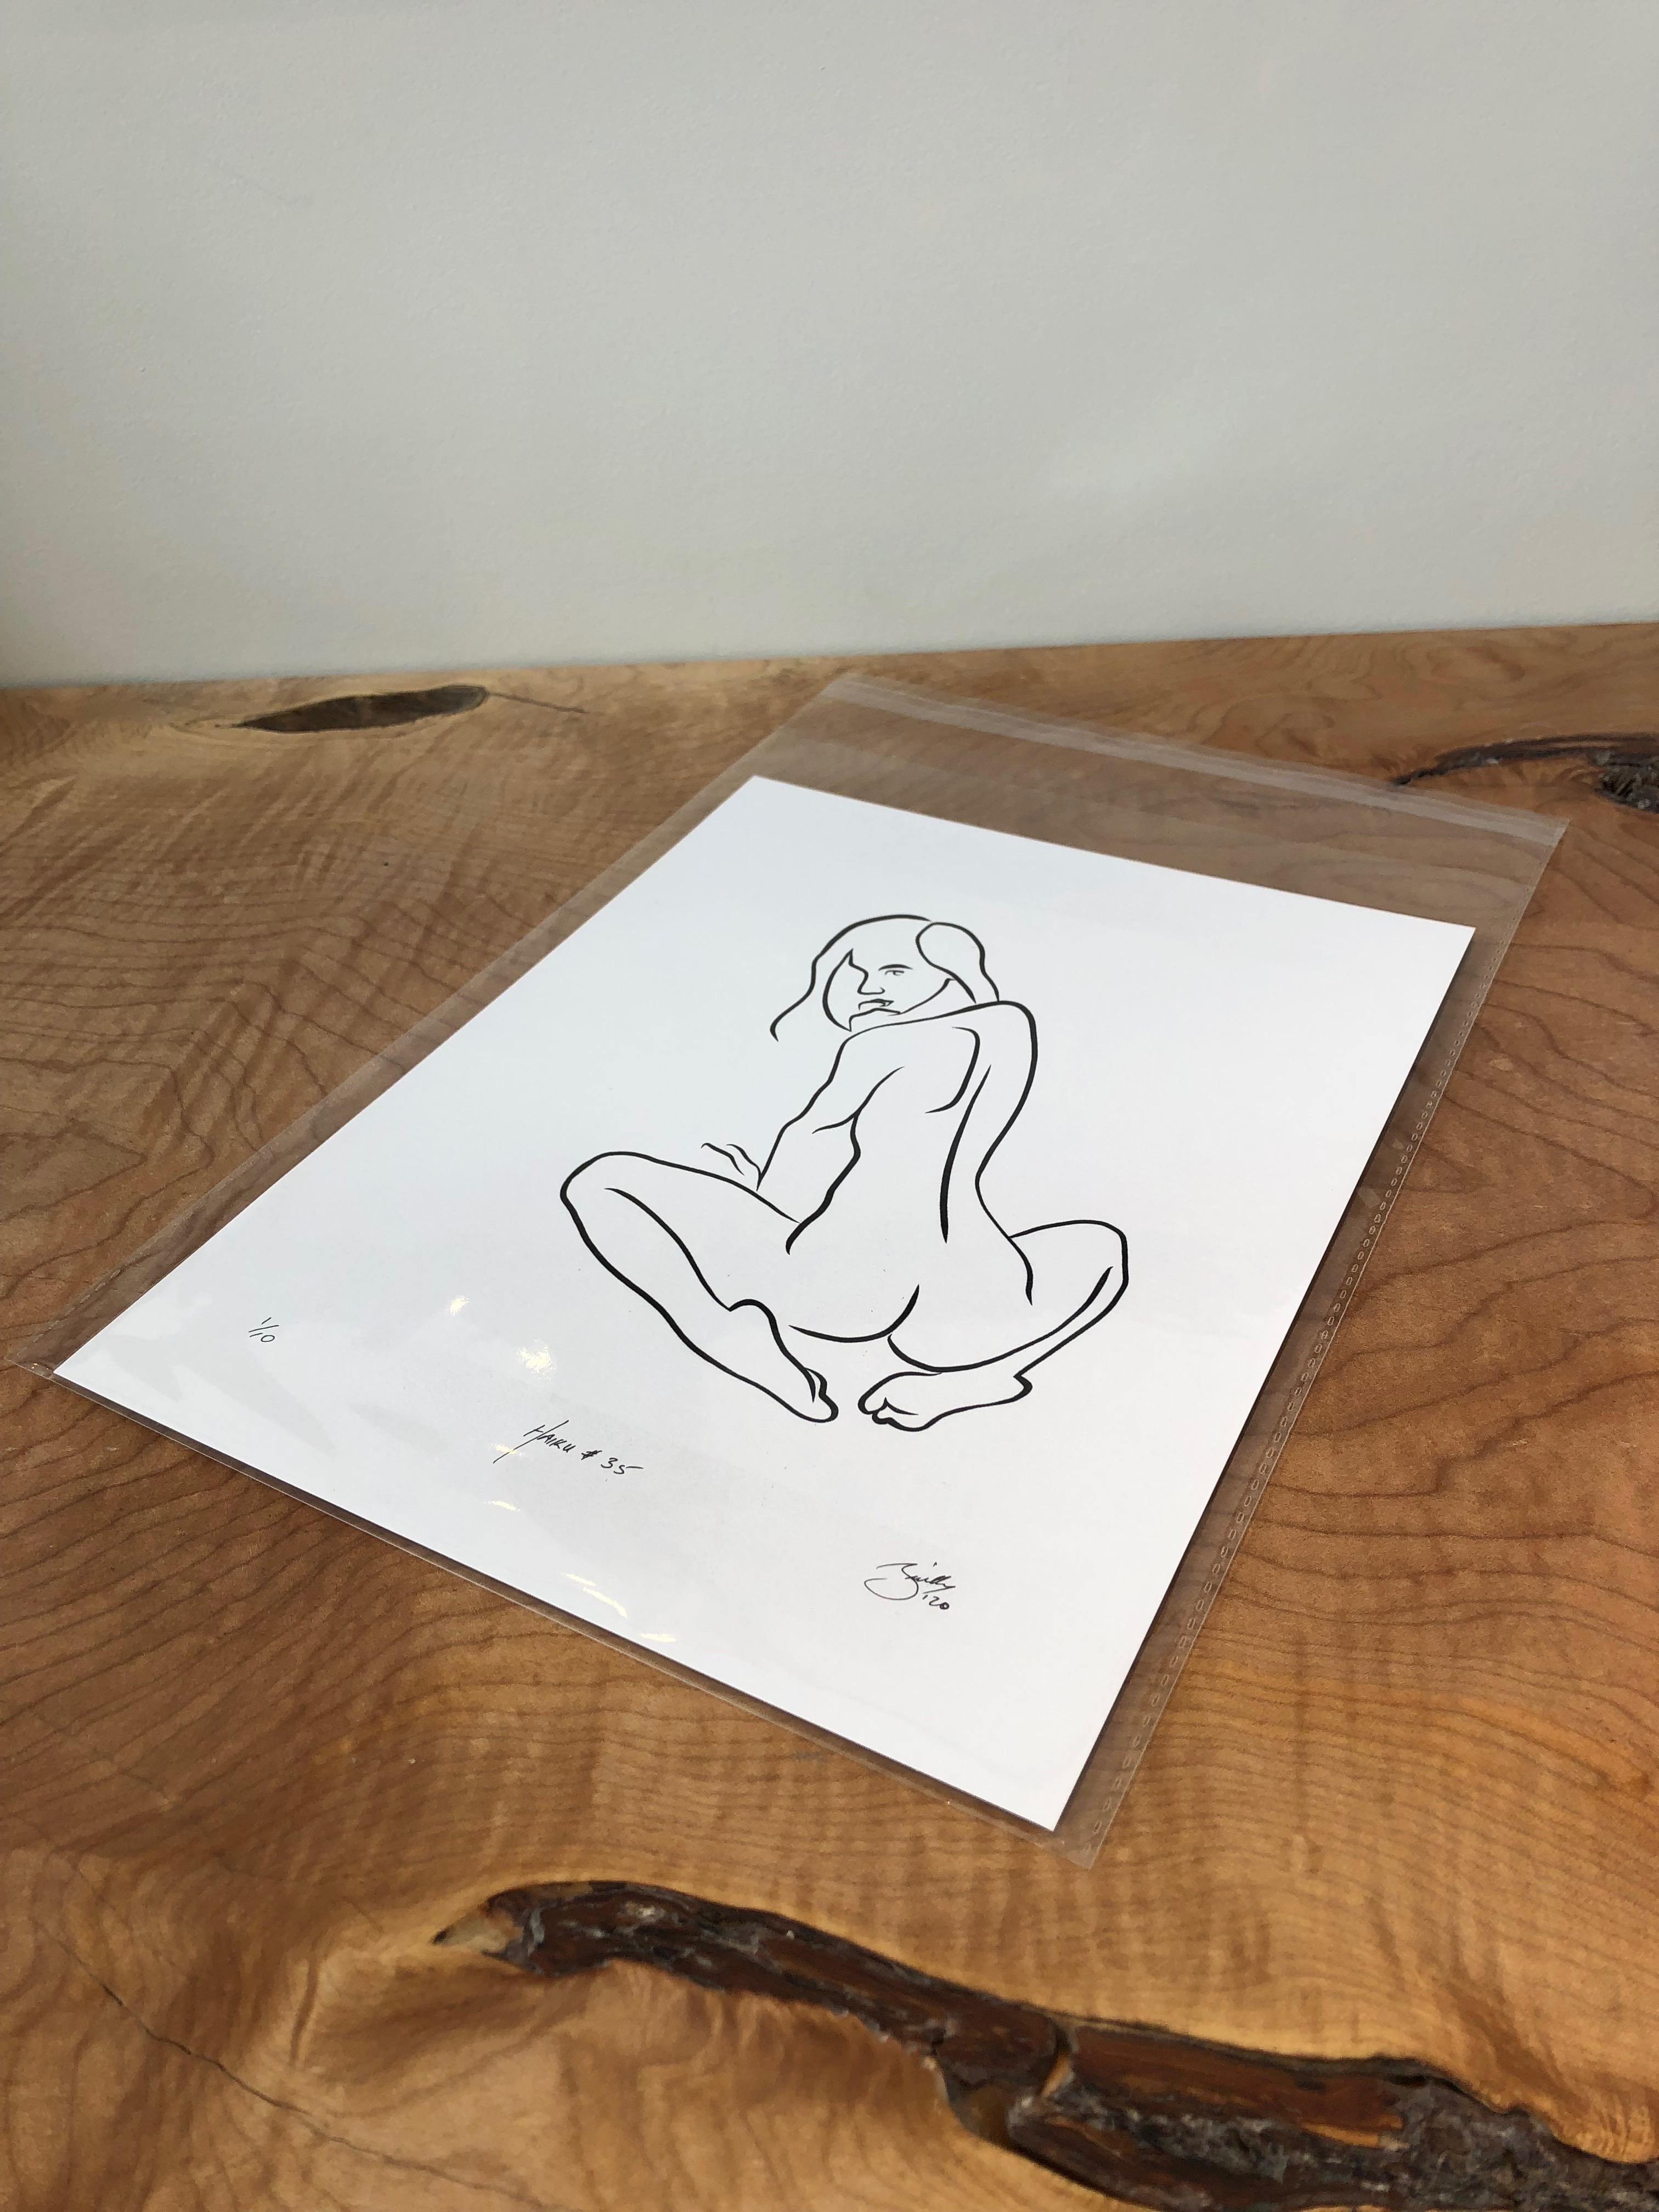 Haiku #35 - Digital Vector Drawing Seated Female Nude Woman Figure Looking Back - Print by Michael Binkley